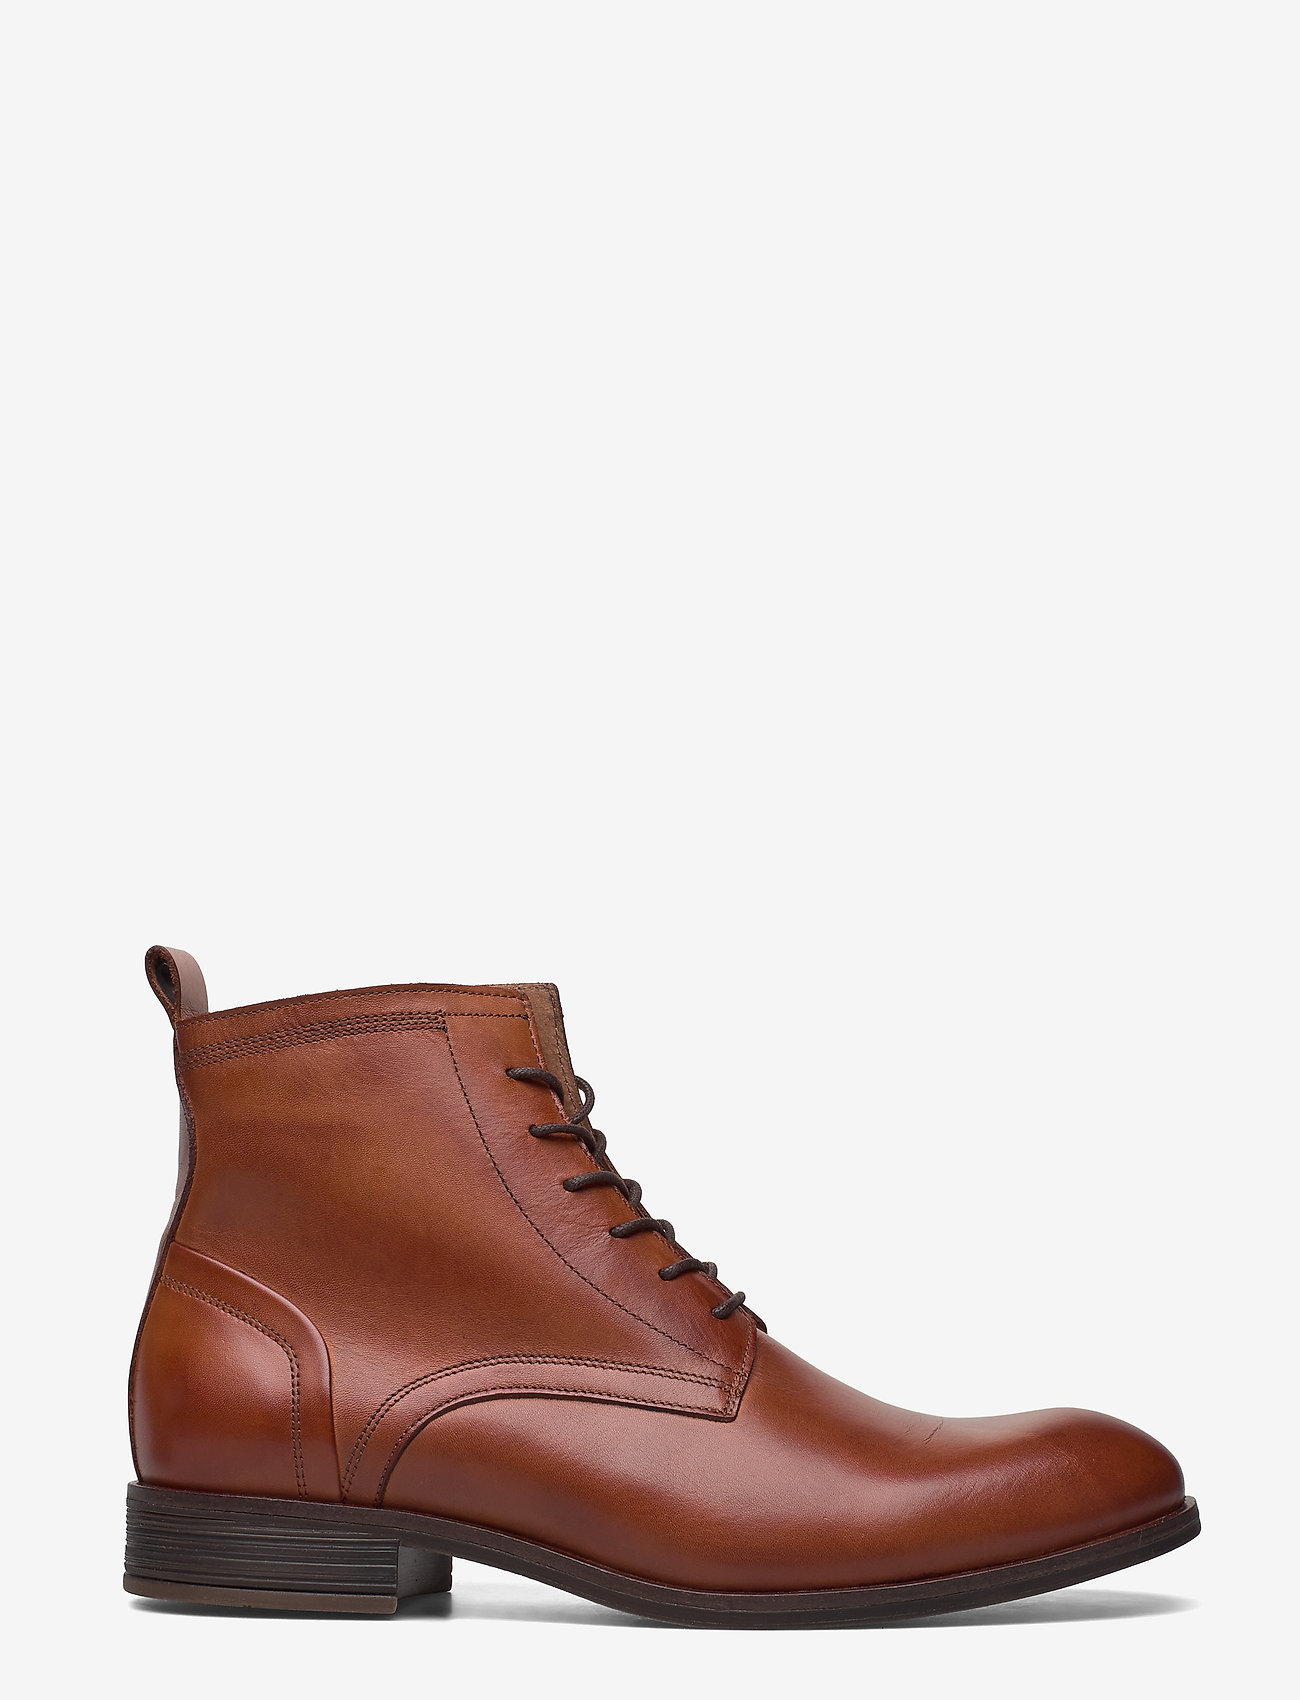 Bianco - BIABYRON Leather Lace Up Boot - støvler med snøre - brandy - 1